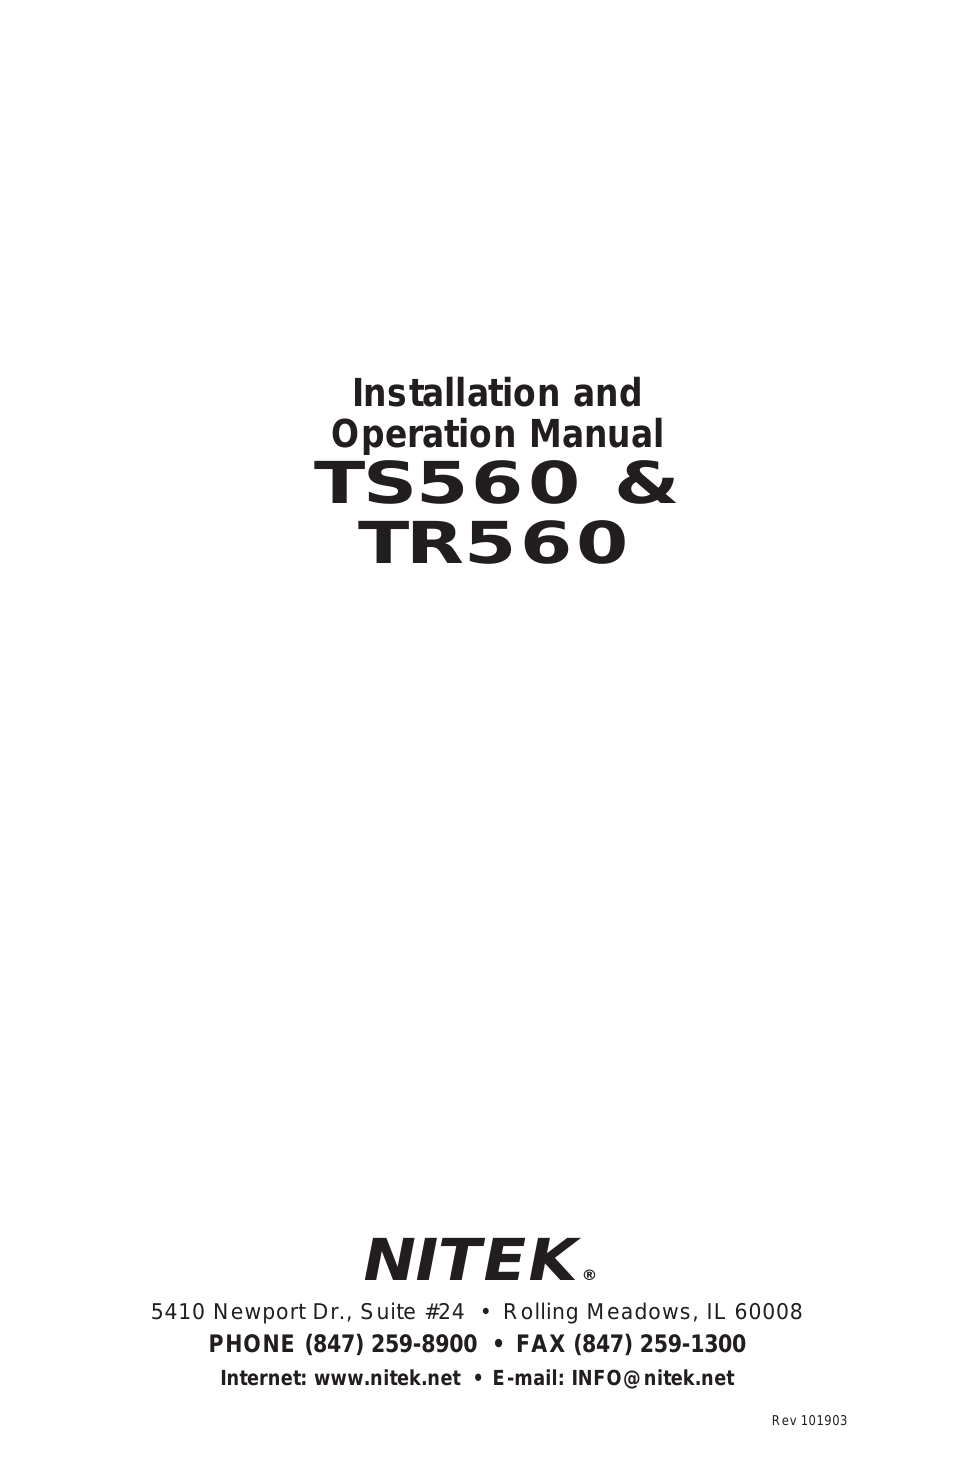 TS560